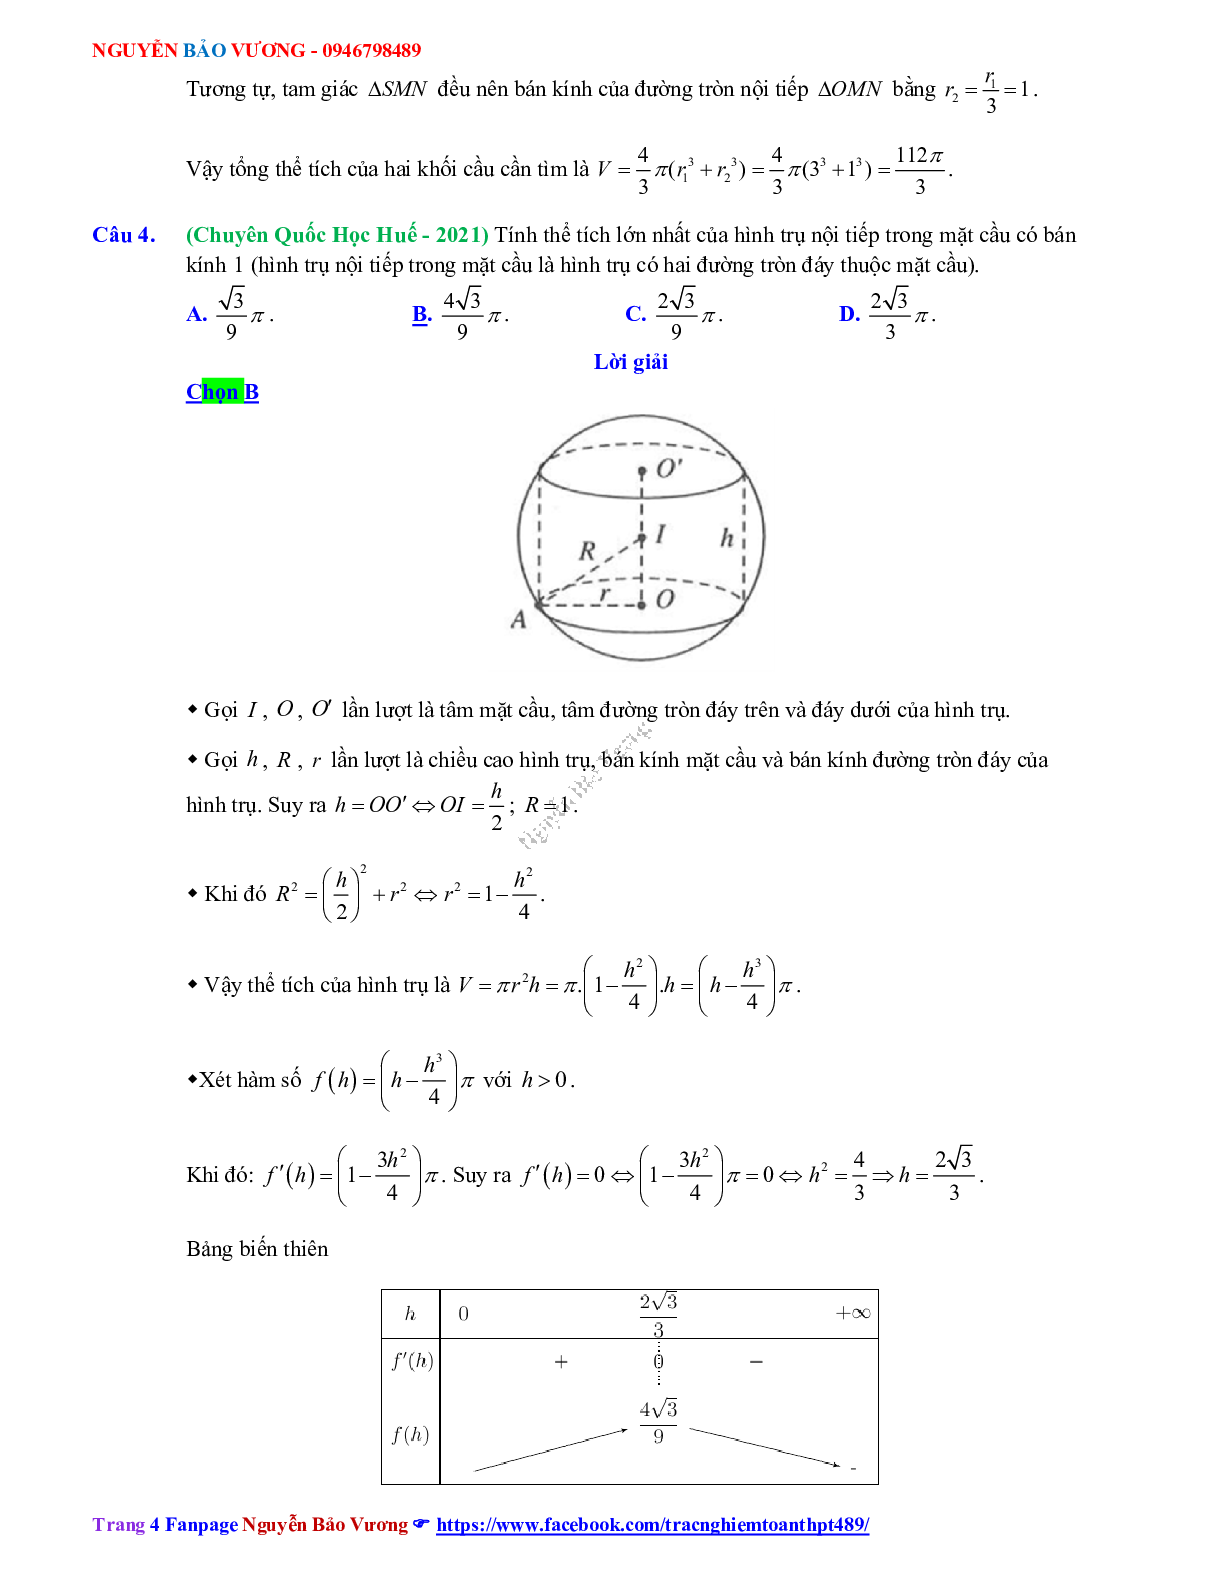 Trắc nghiệm Ôn thi THPT QG Toán 12: Đáp án khối tròn xoay mức độ vận dụng cao (trang 4)